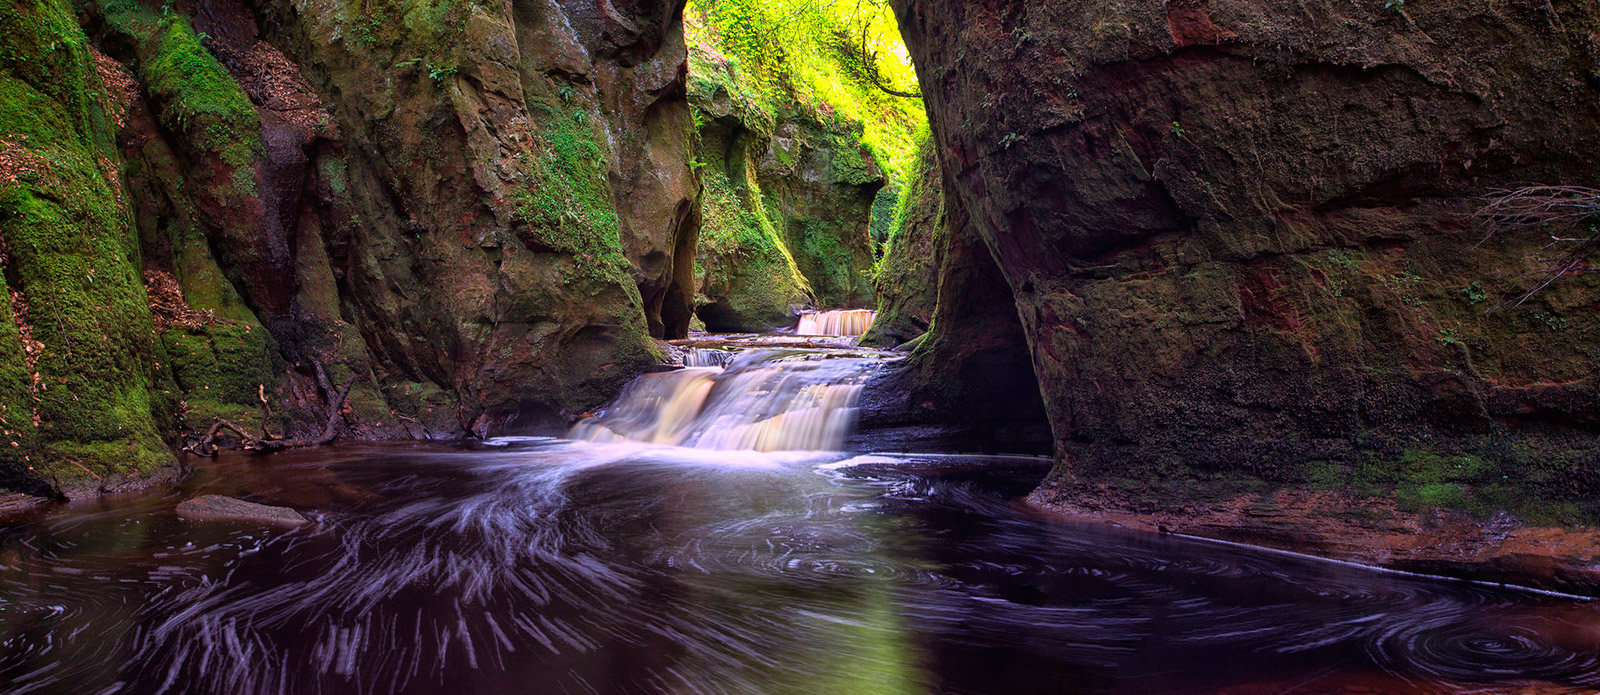 Finnich Gorge Waterfalls, Scotland